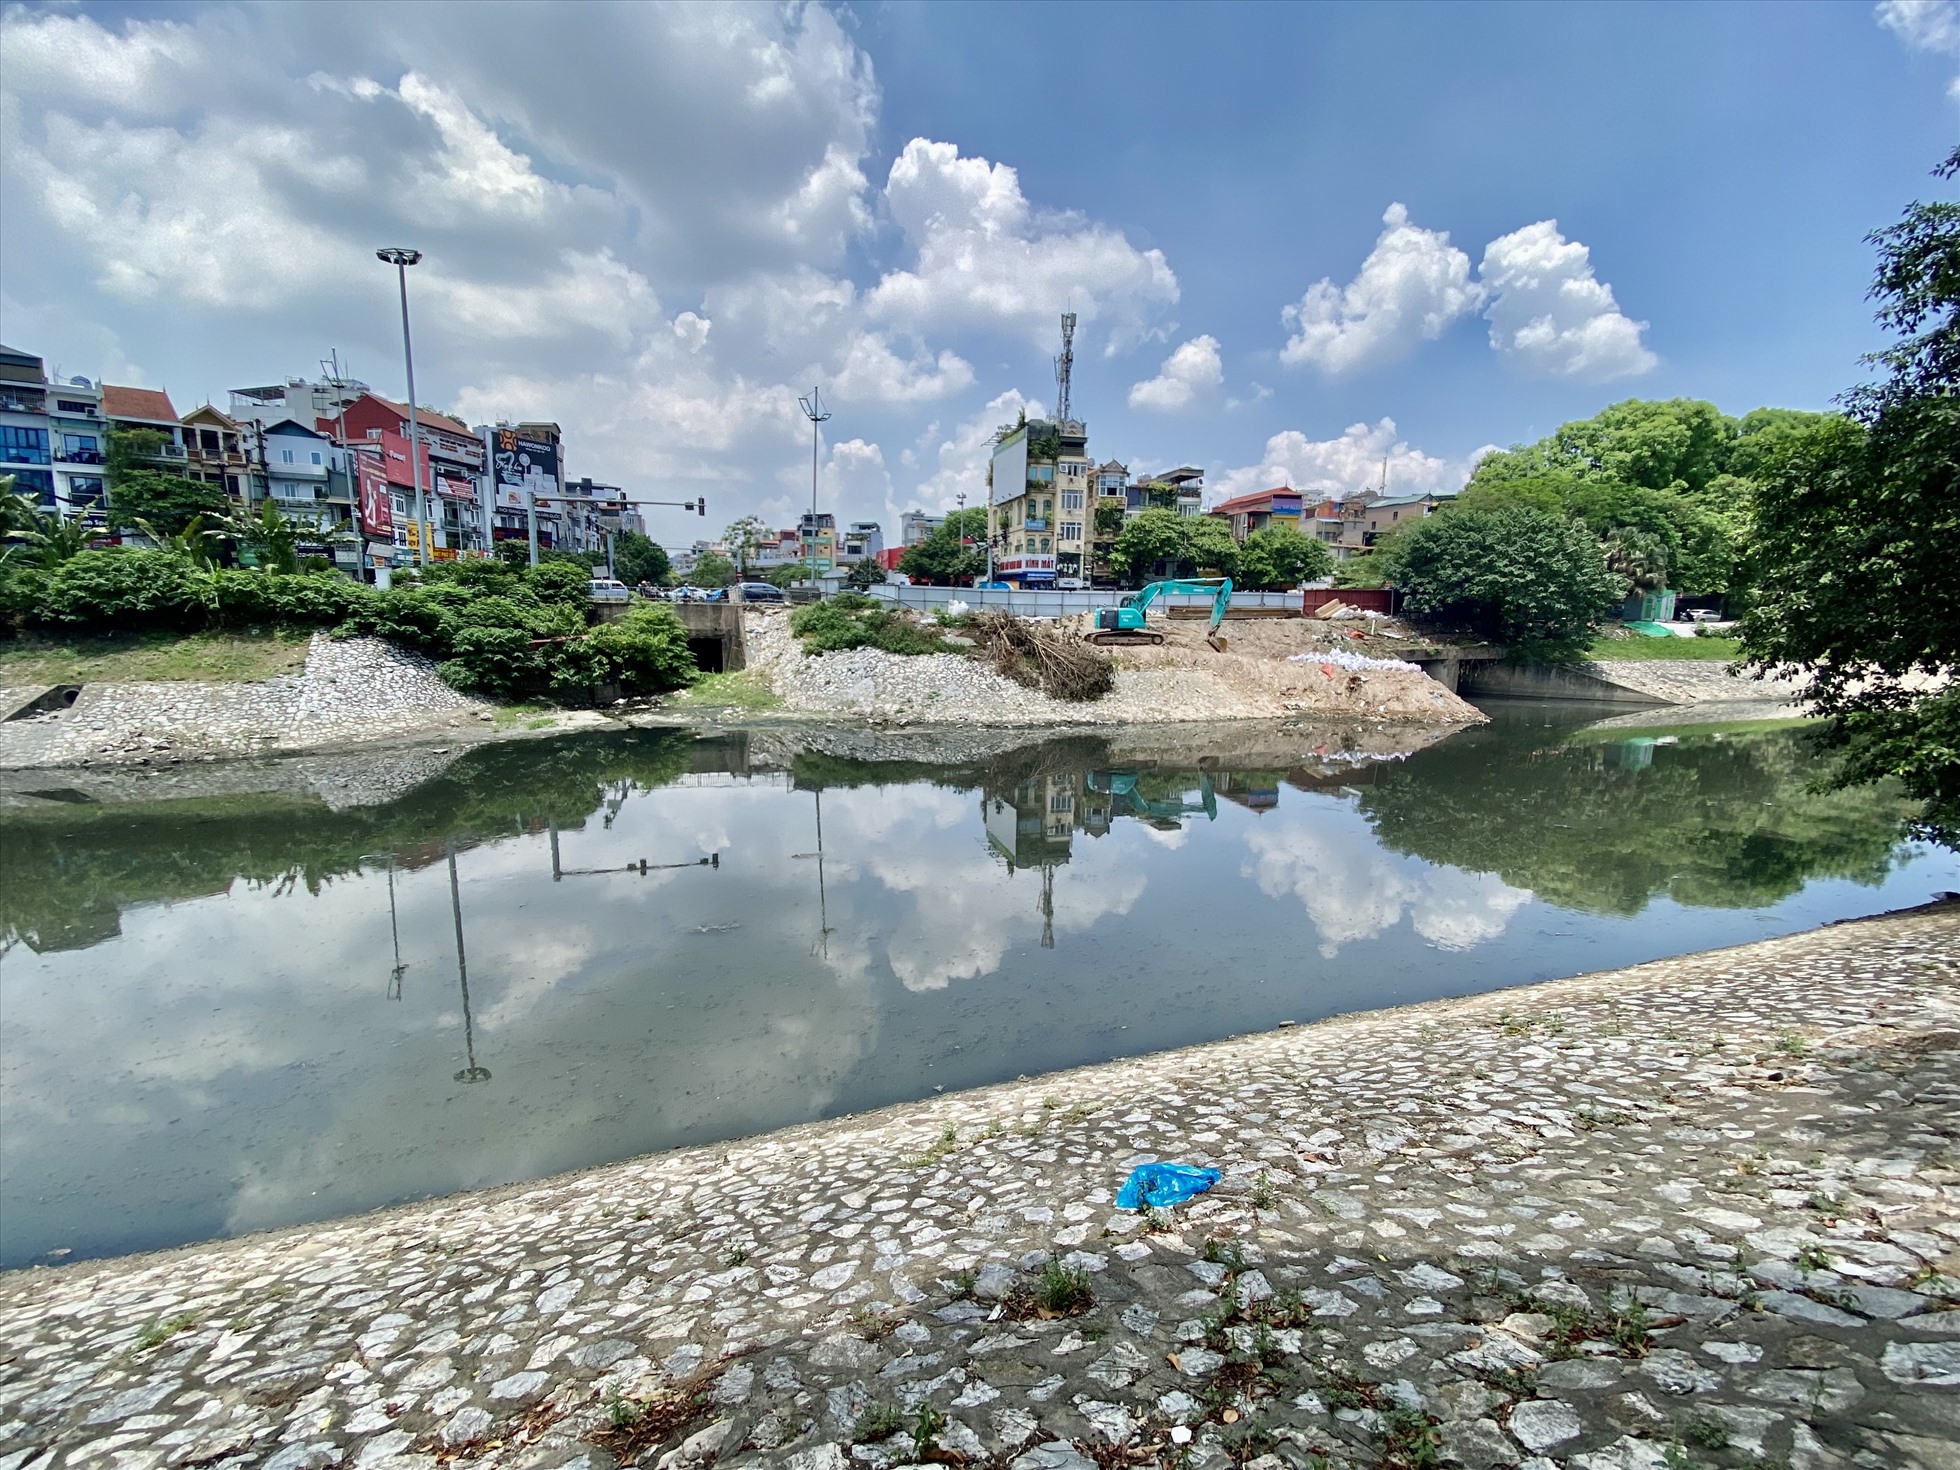 Sông Tô Lịch Dòng chảy qua nhiều khu dân cư đông đúc, đã và đang chịu ảnh hưởng lớn từ sự quá tải hạ tầng, ô nhiễm trầm trọng về nguồn nước nhất ở thủ đô Hà Nội. Ảnh: Vĩnh Hoàng